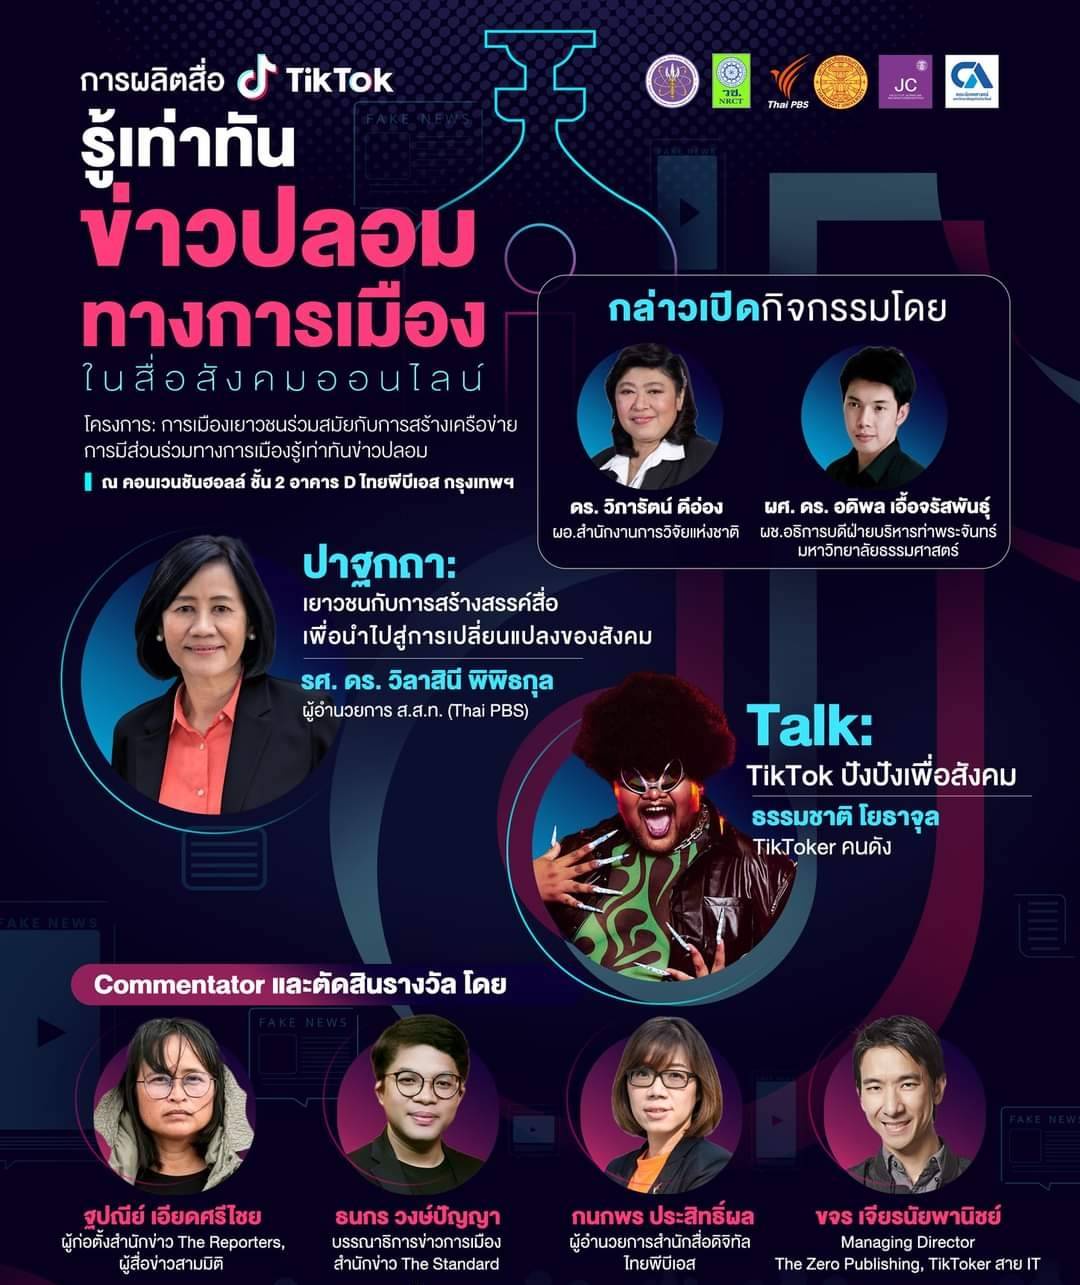 วช. หนุน มธ. และไทยพีบีเอส จัดกิจกรรมผลิตสื่อ Tiktok เพื่อให้เยาวชนรู้เท่าทันข่าวปลอมทางการเมืองในสื่อสังคมออนไลน์